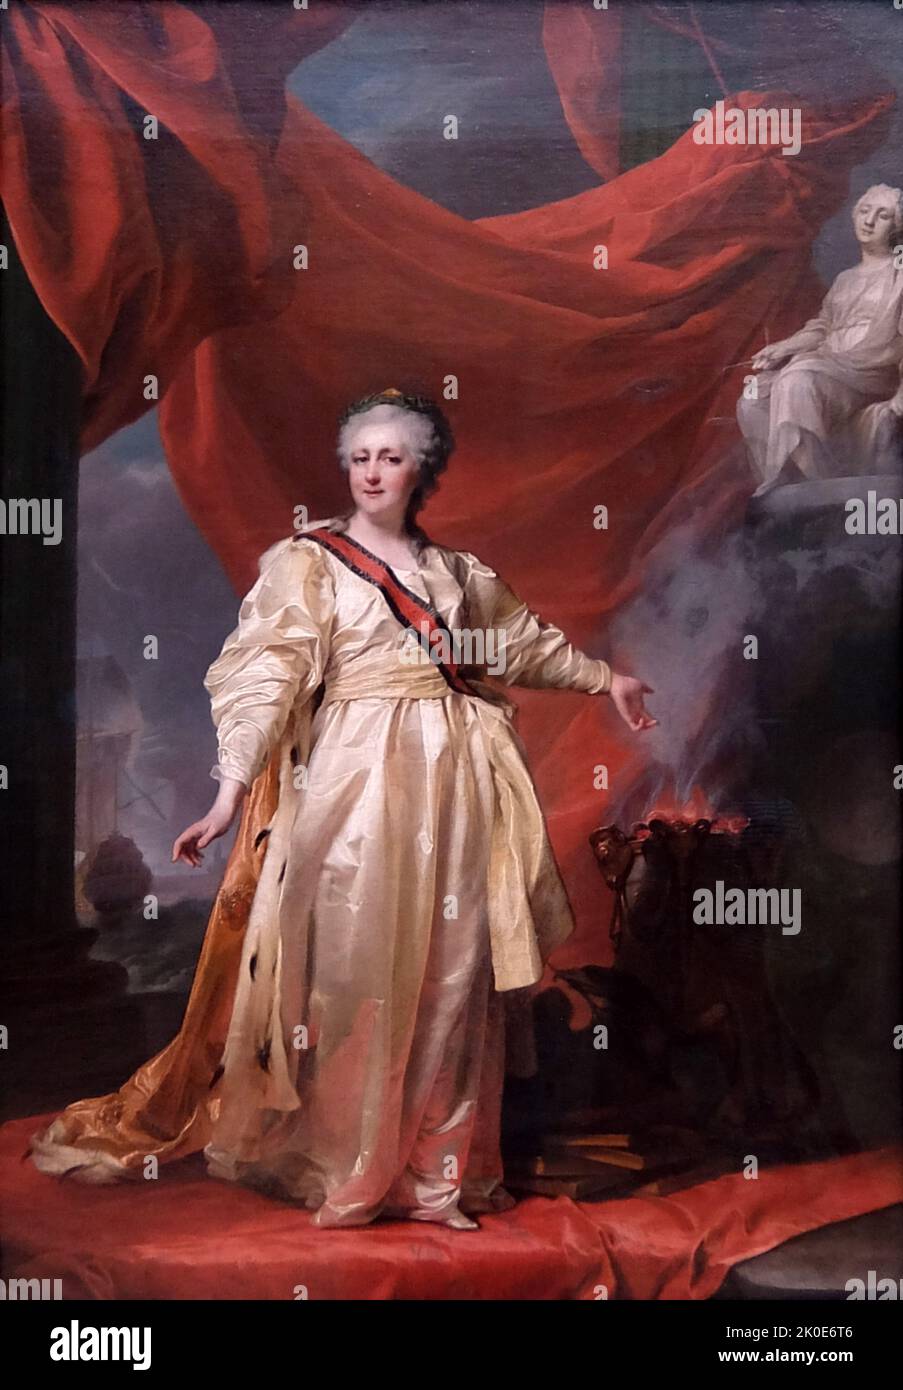 Ritratto di Caterina II la Legislatrice nel tempio dedicato alla Dea di Giustizia di D. G. Levitsky dell'imperatrice Caterina II di Russia/Caterina la Grande. 1770. Foto Stock